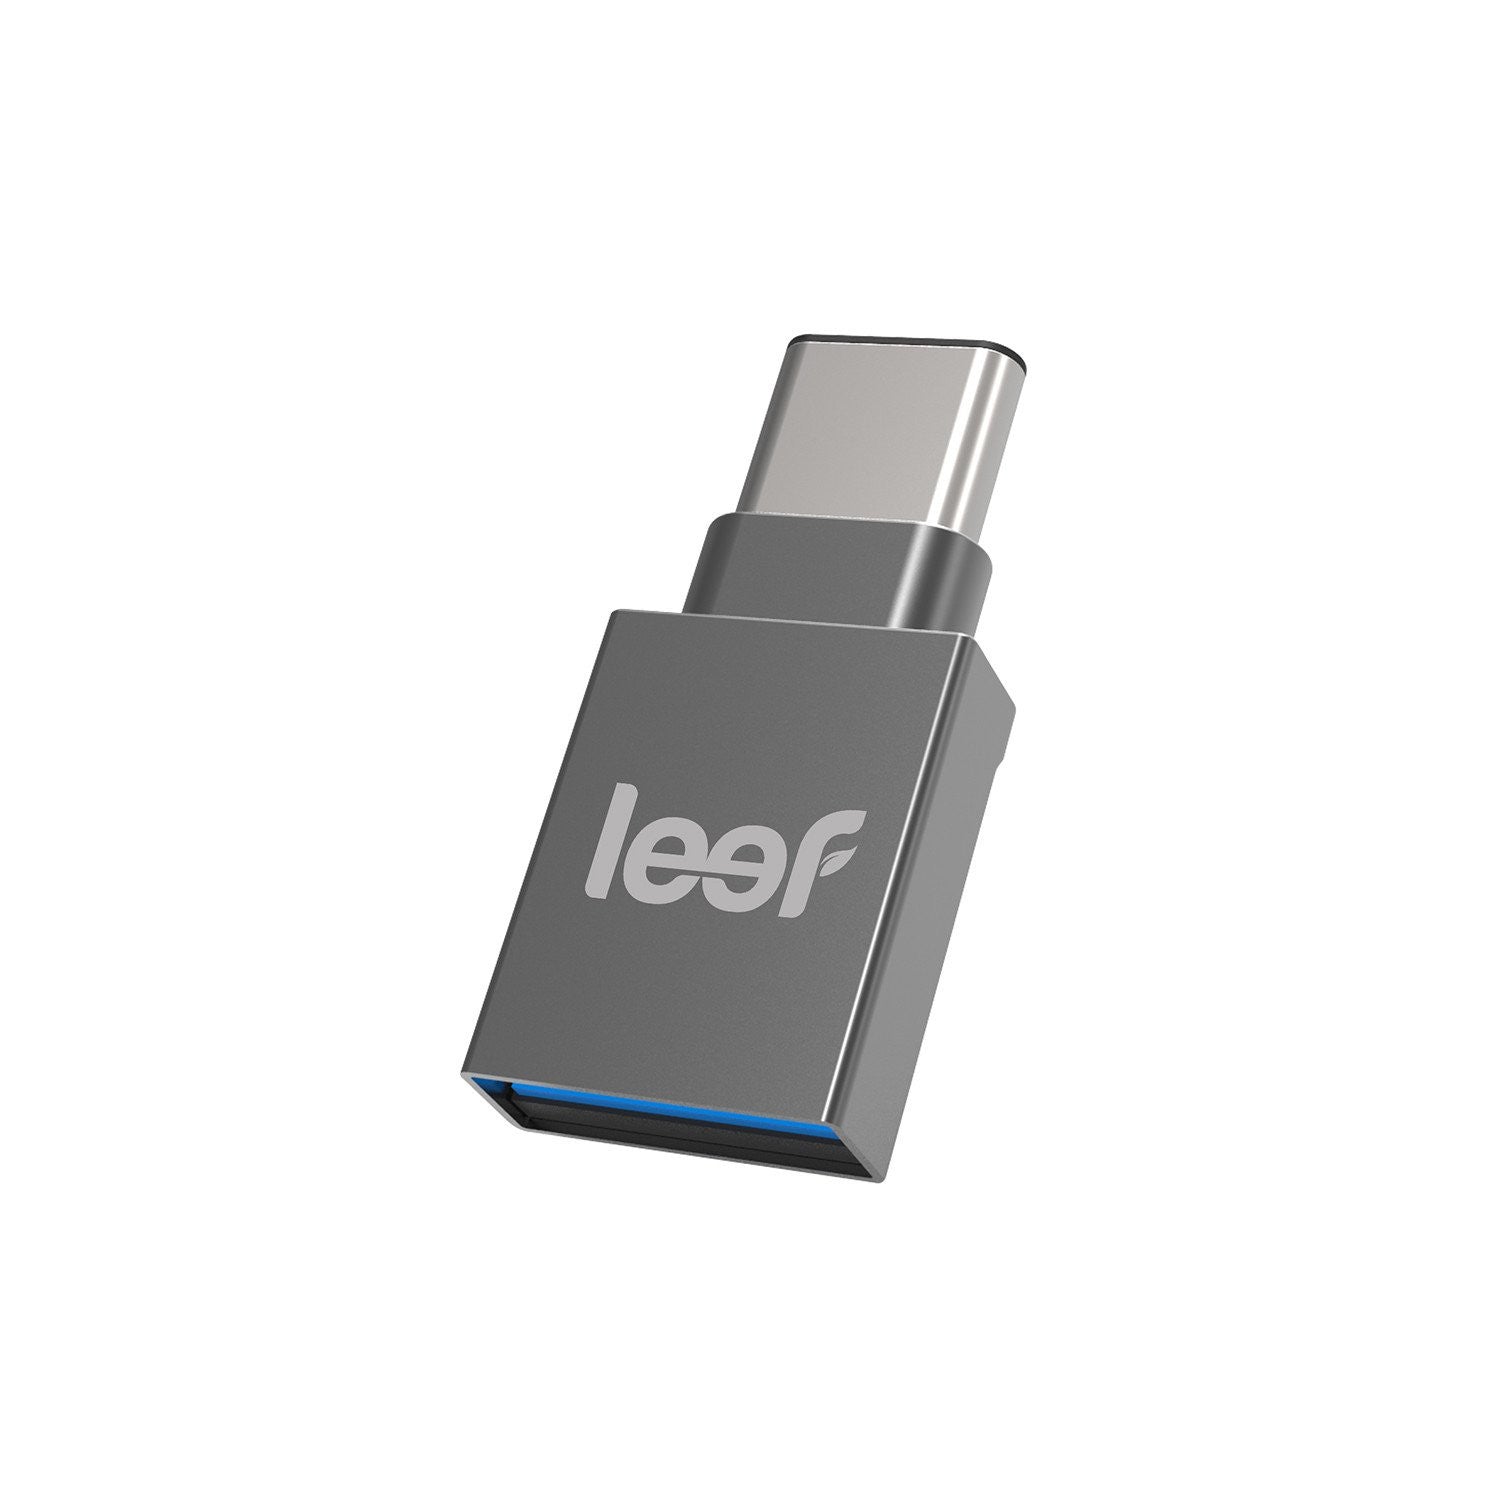 Connecter une clé ou dispositif USB sur un Macbook grâce à ce